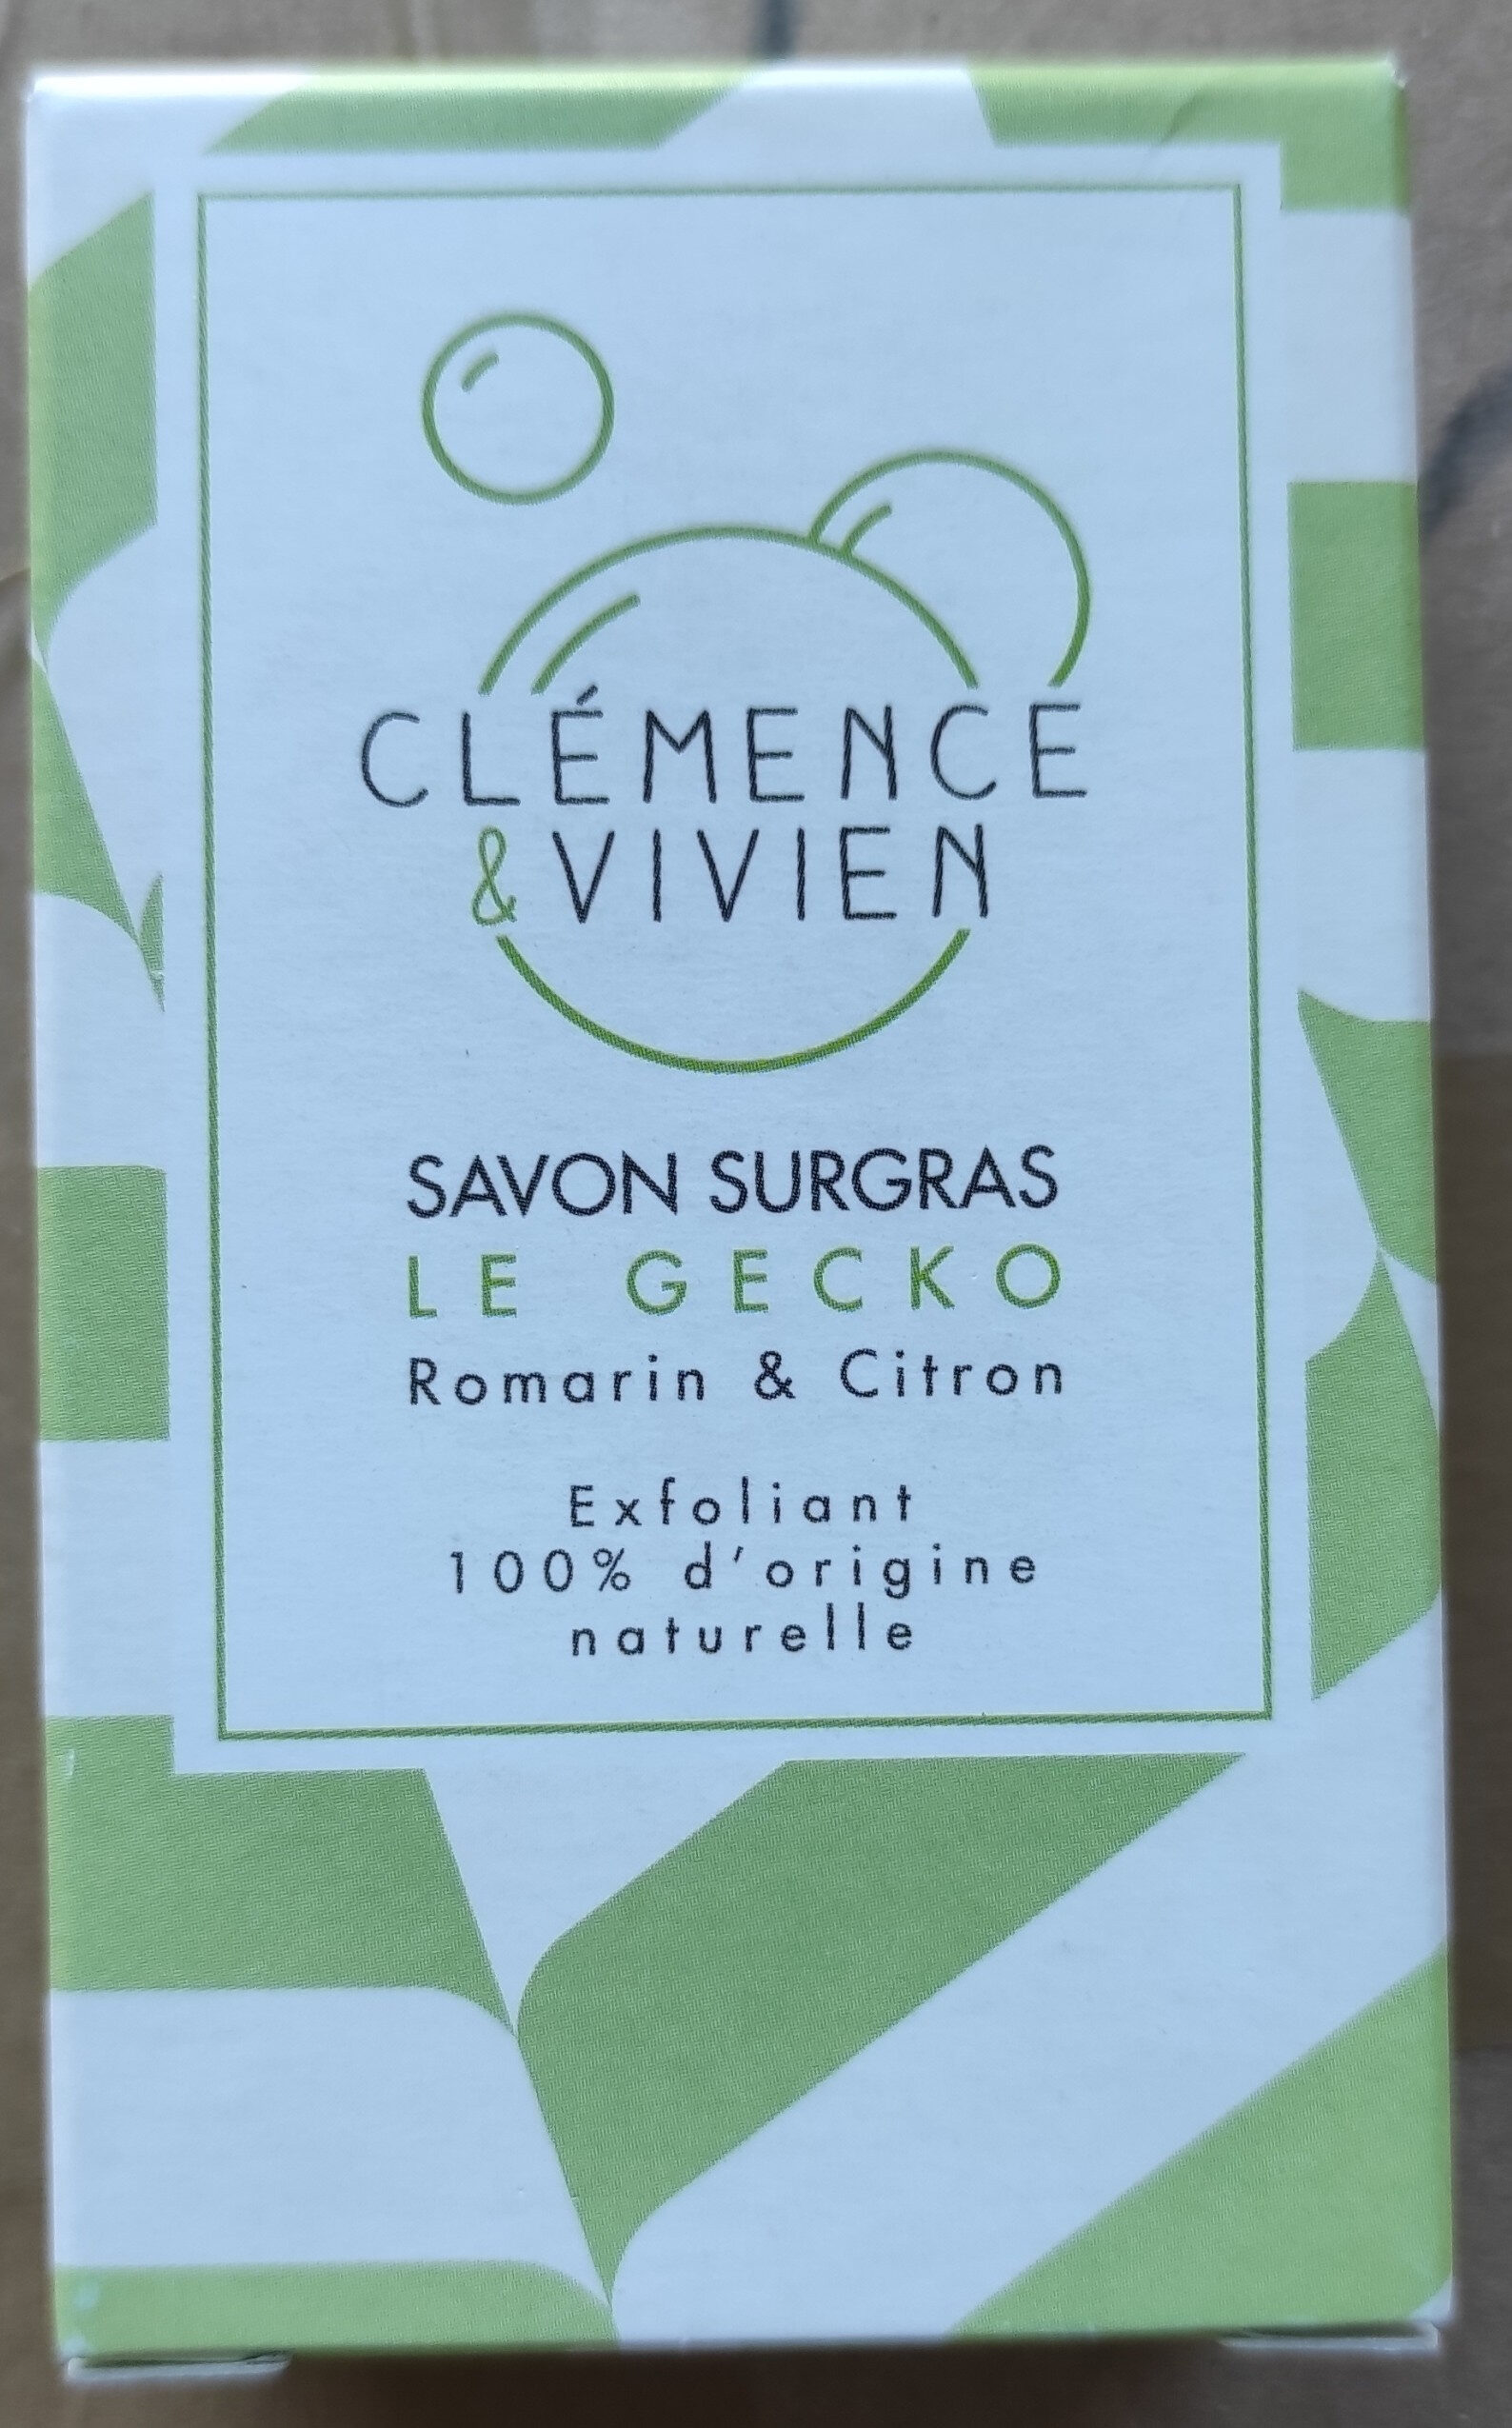 Savon surgras Le Gecko Romarin & Citron - Produto - fr